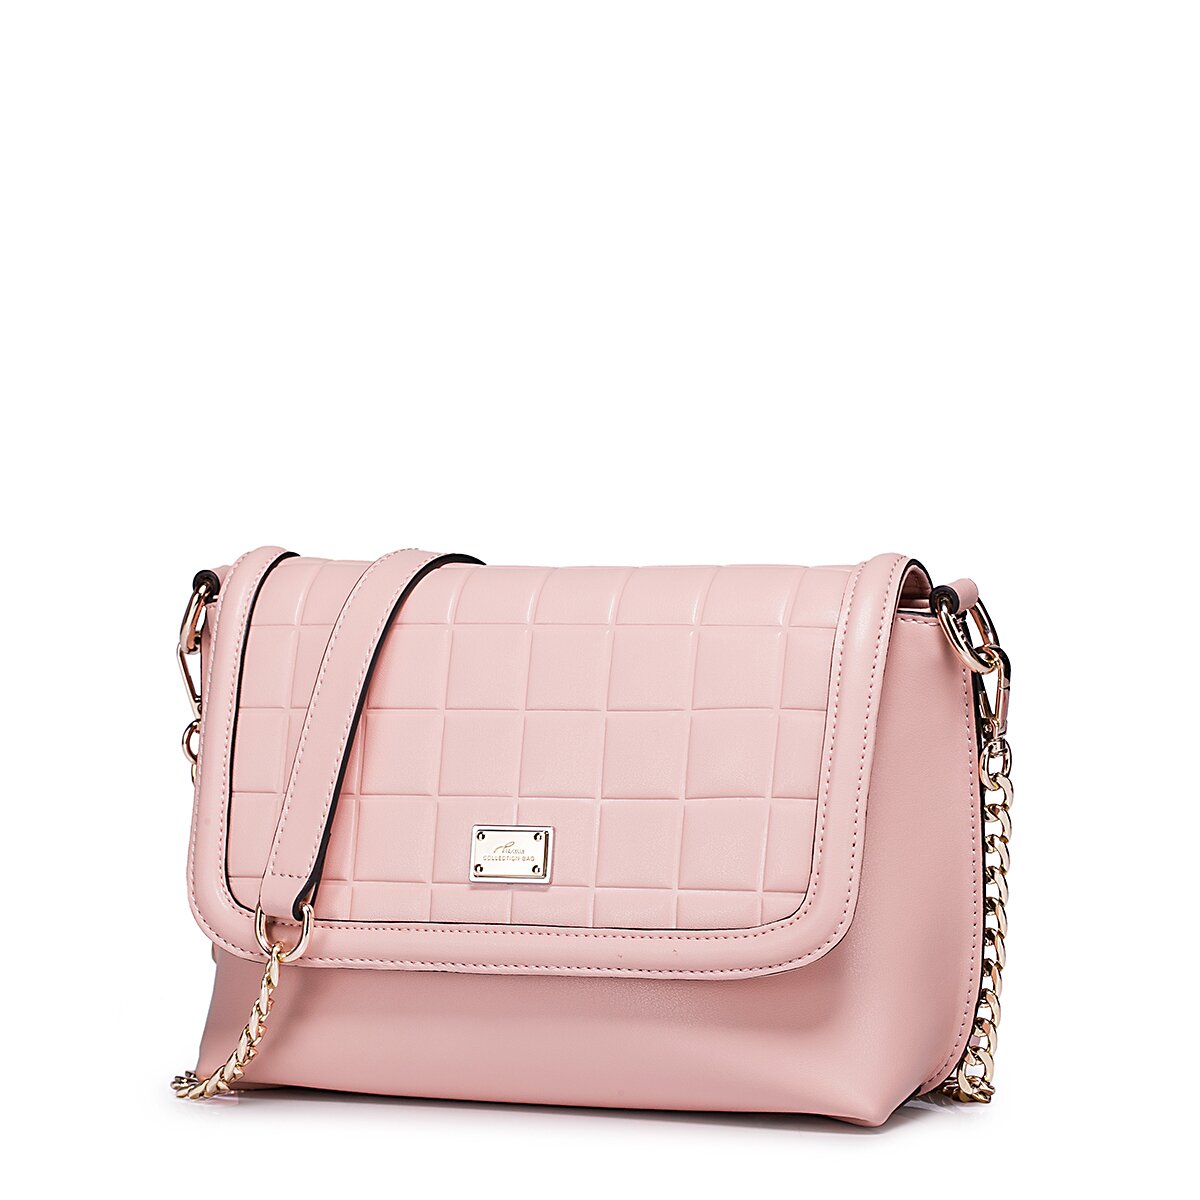 NUCELLE lady genuine leather messenger bag Pink